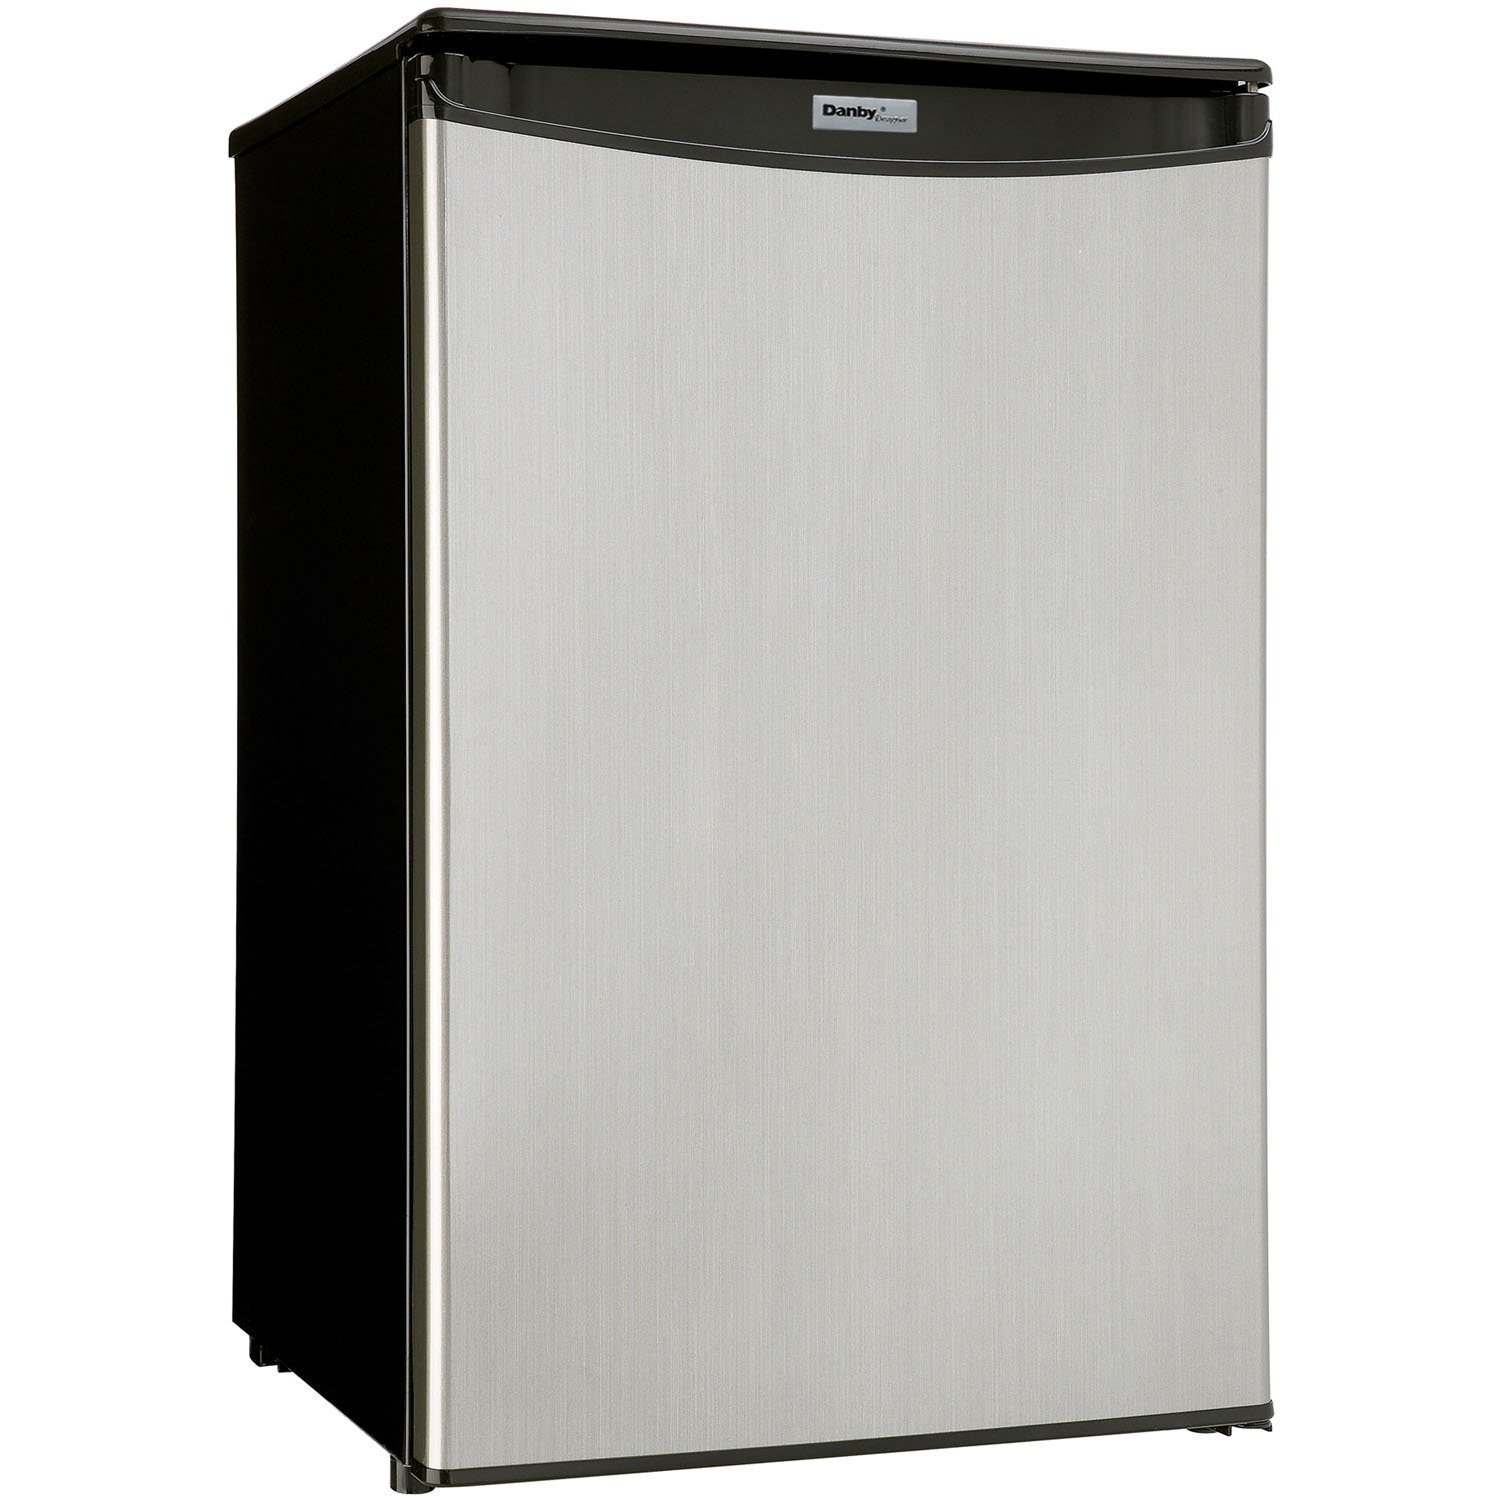 Danby DAR044A5BSLDD Compact Refrigerator, Spotless Steel Door, 4.4 Cubic Feet